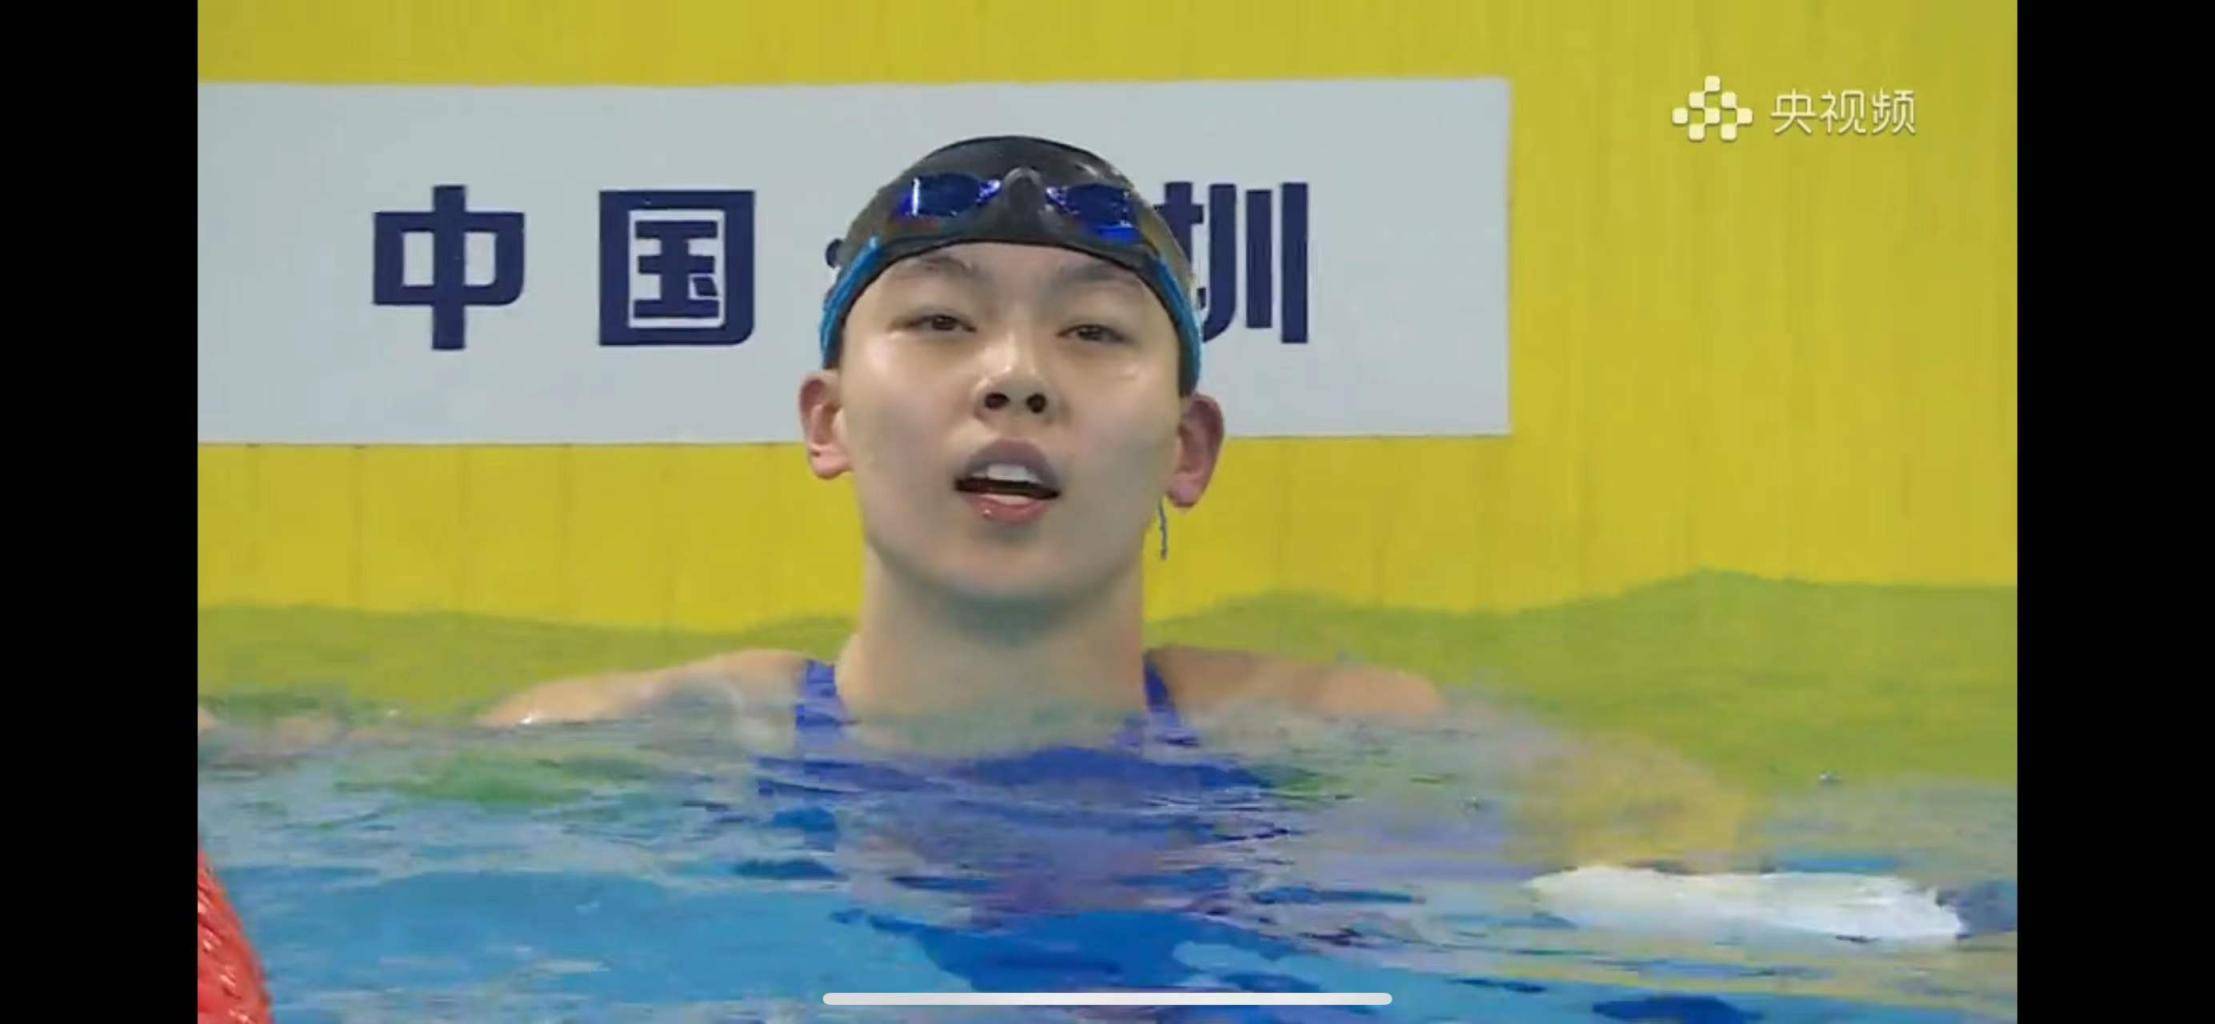 全国游泳冠军赛 杨浚瑄刷新全国纪录 潘展乐再进47秒